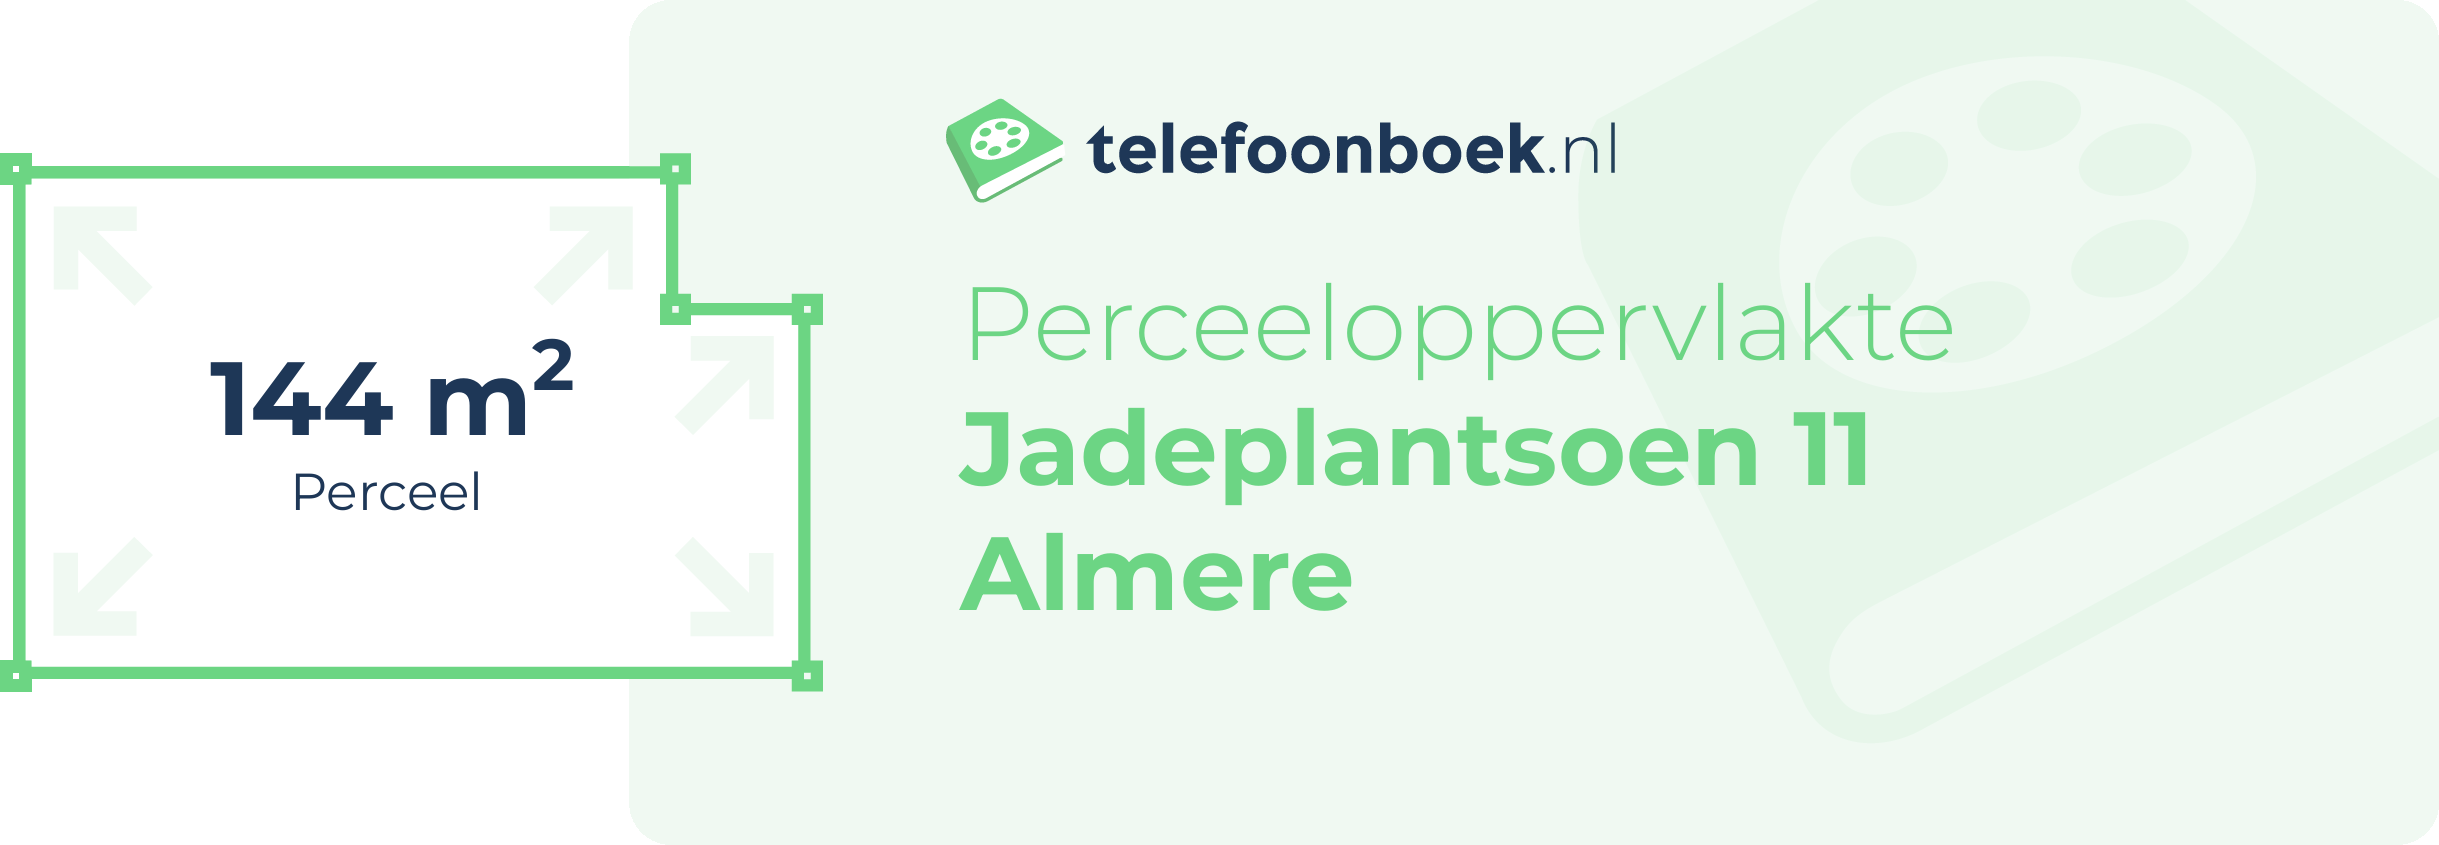 Perceeloppervlakte Jadeplantsoen 11 Almere